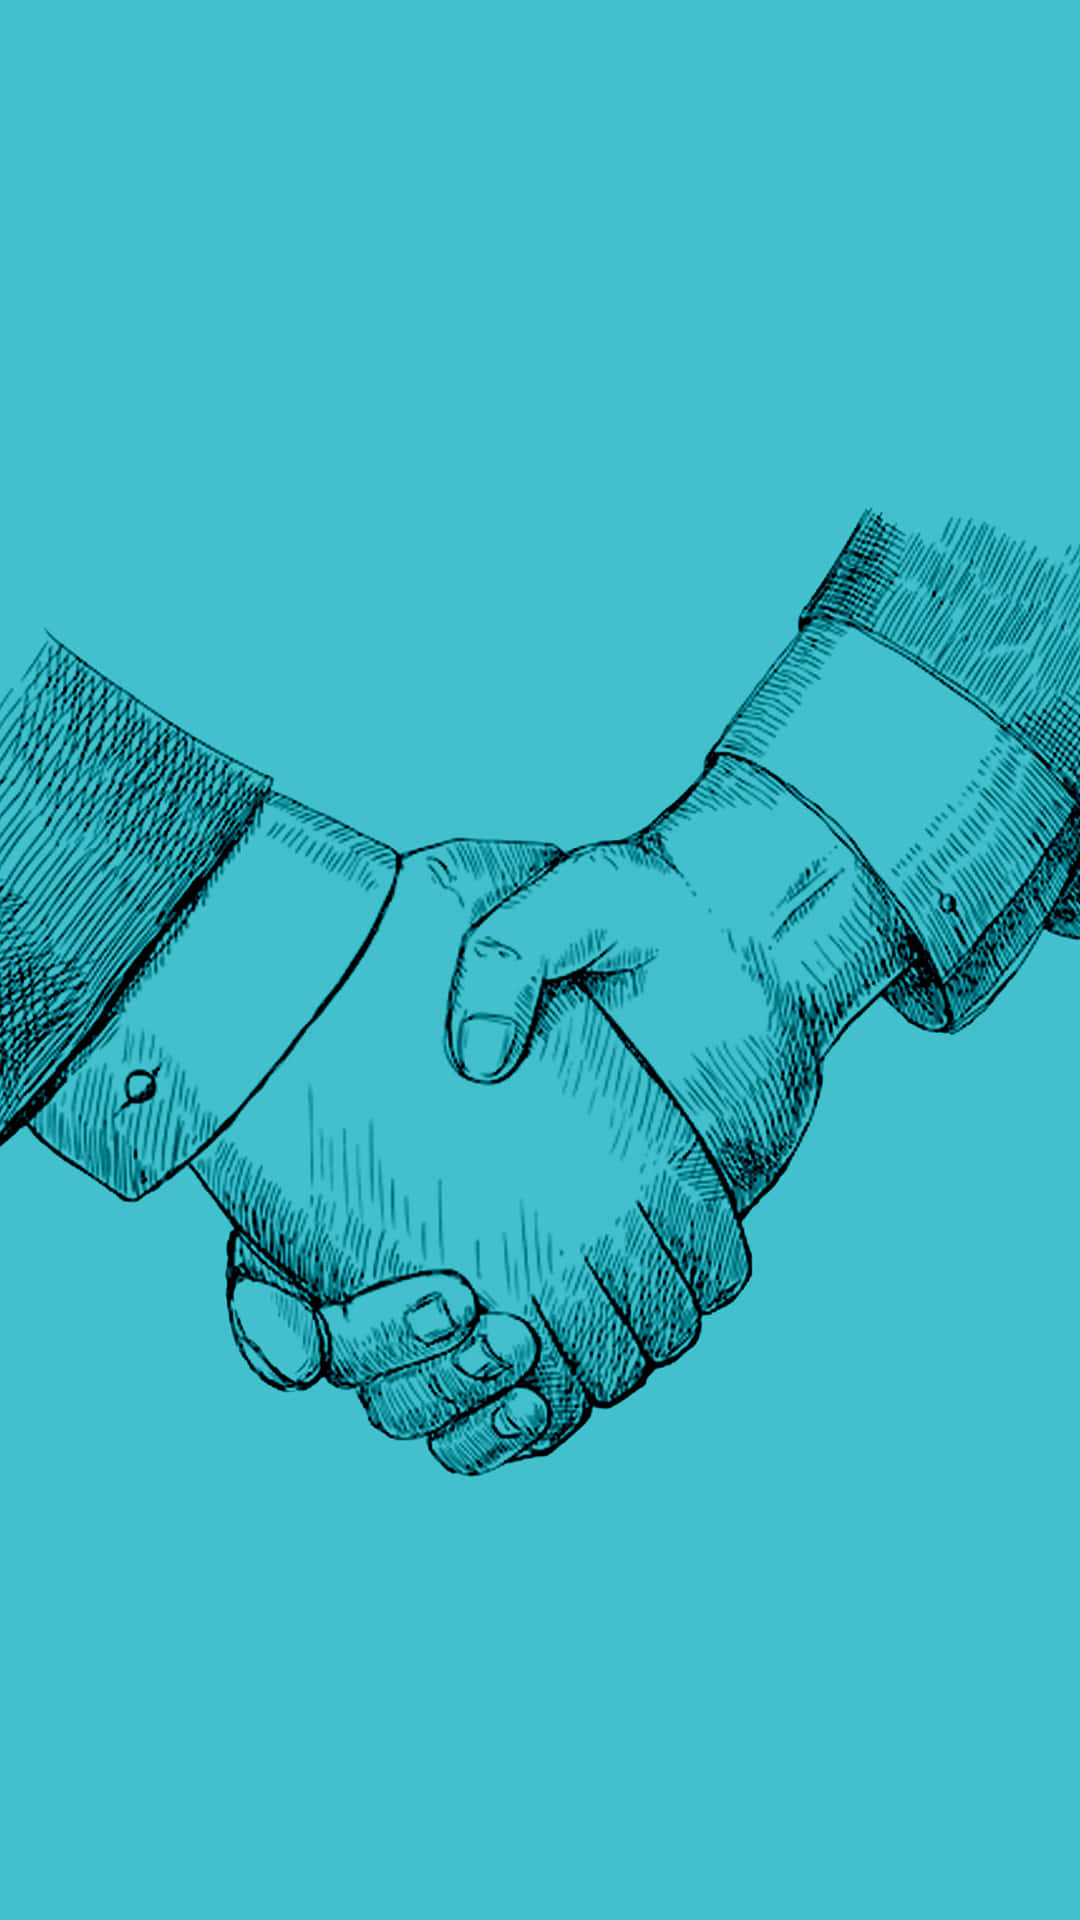 High Definition Illustration Of A Blue Handshake